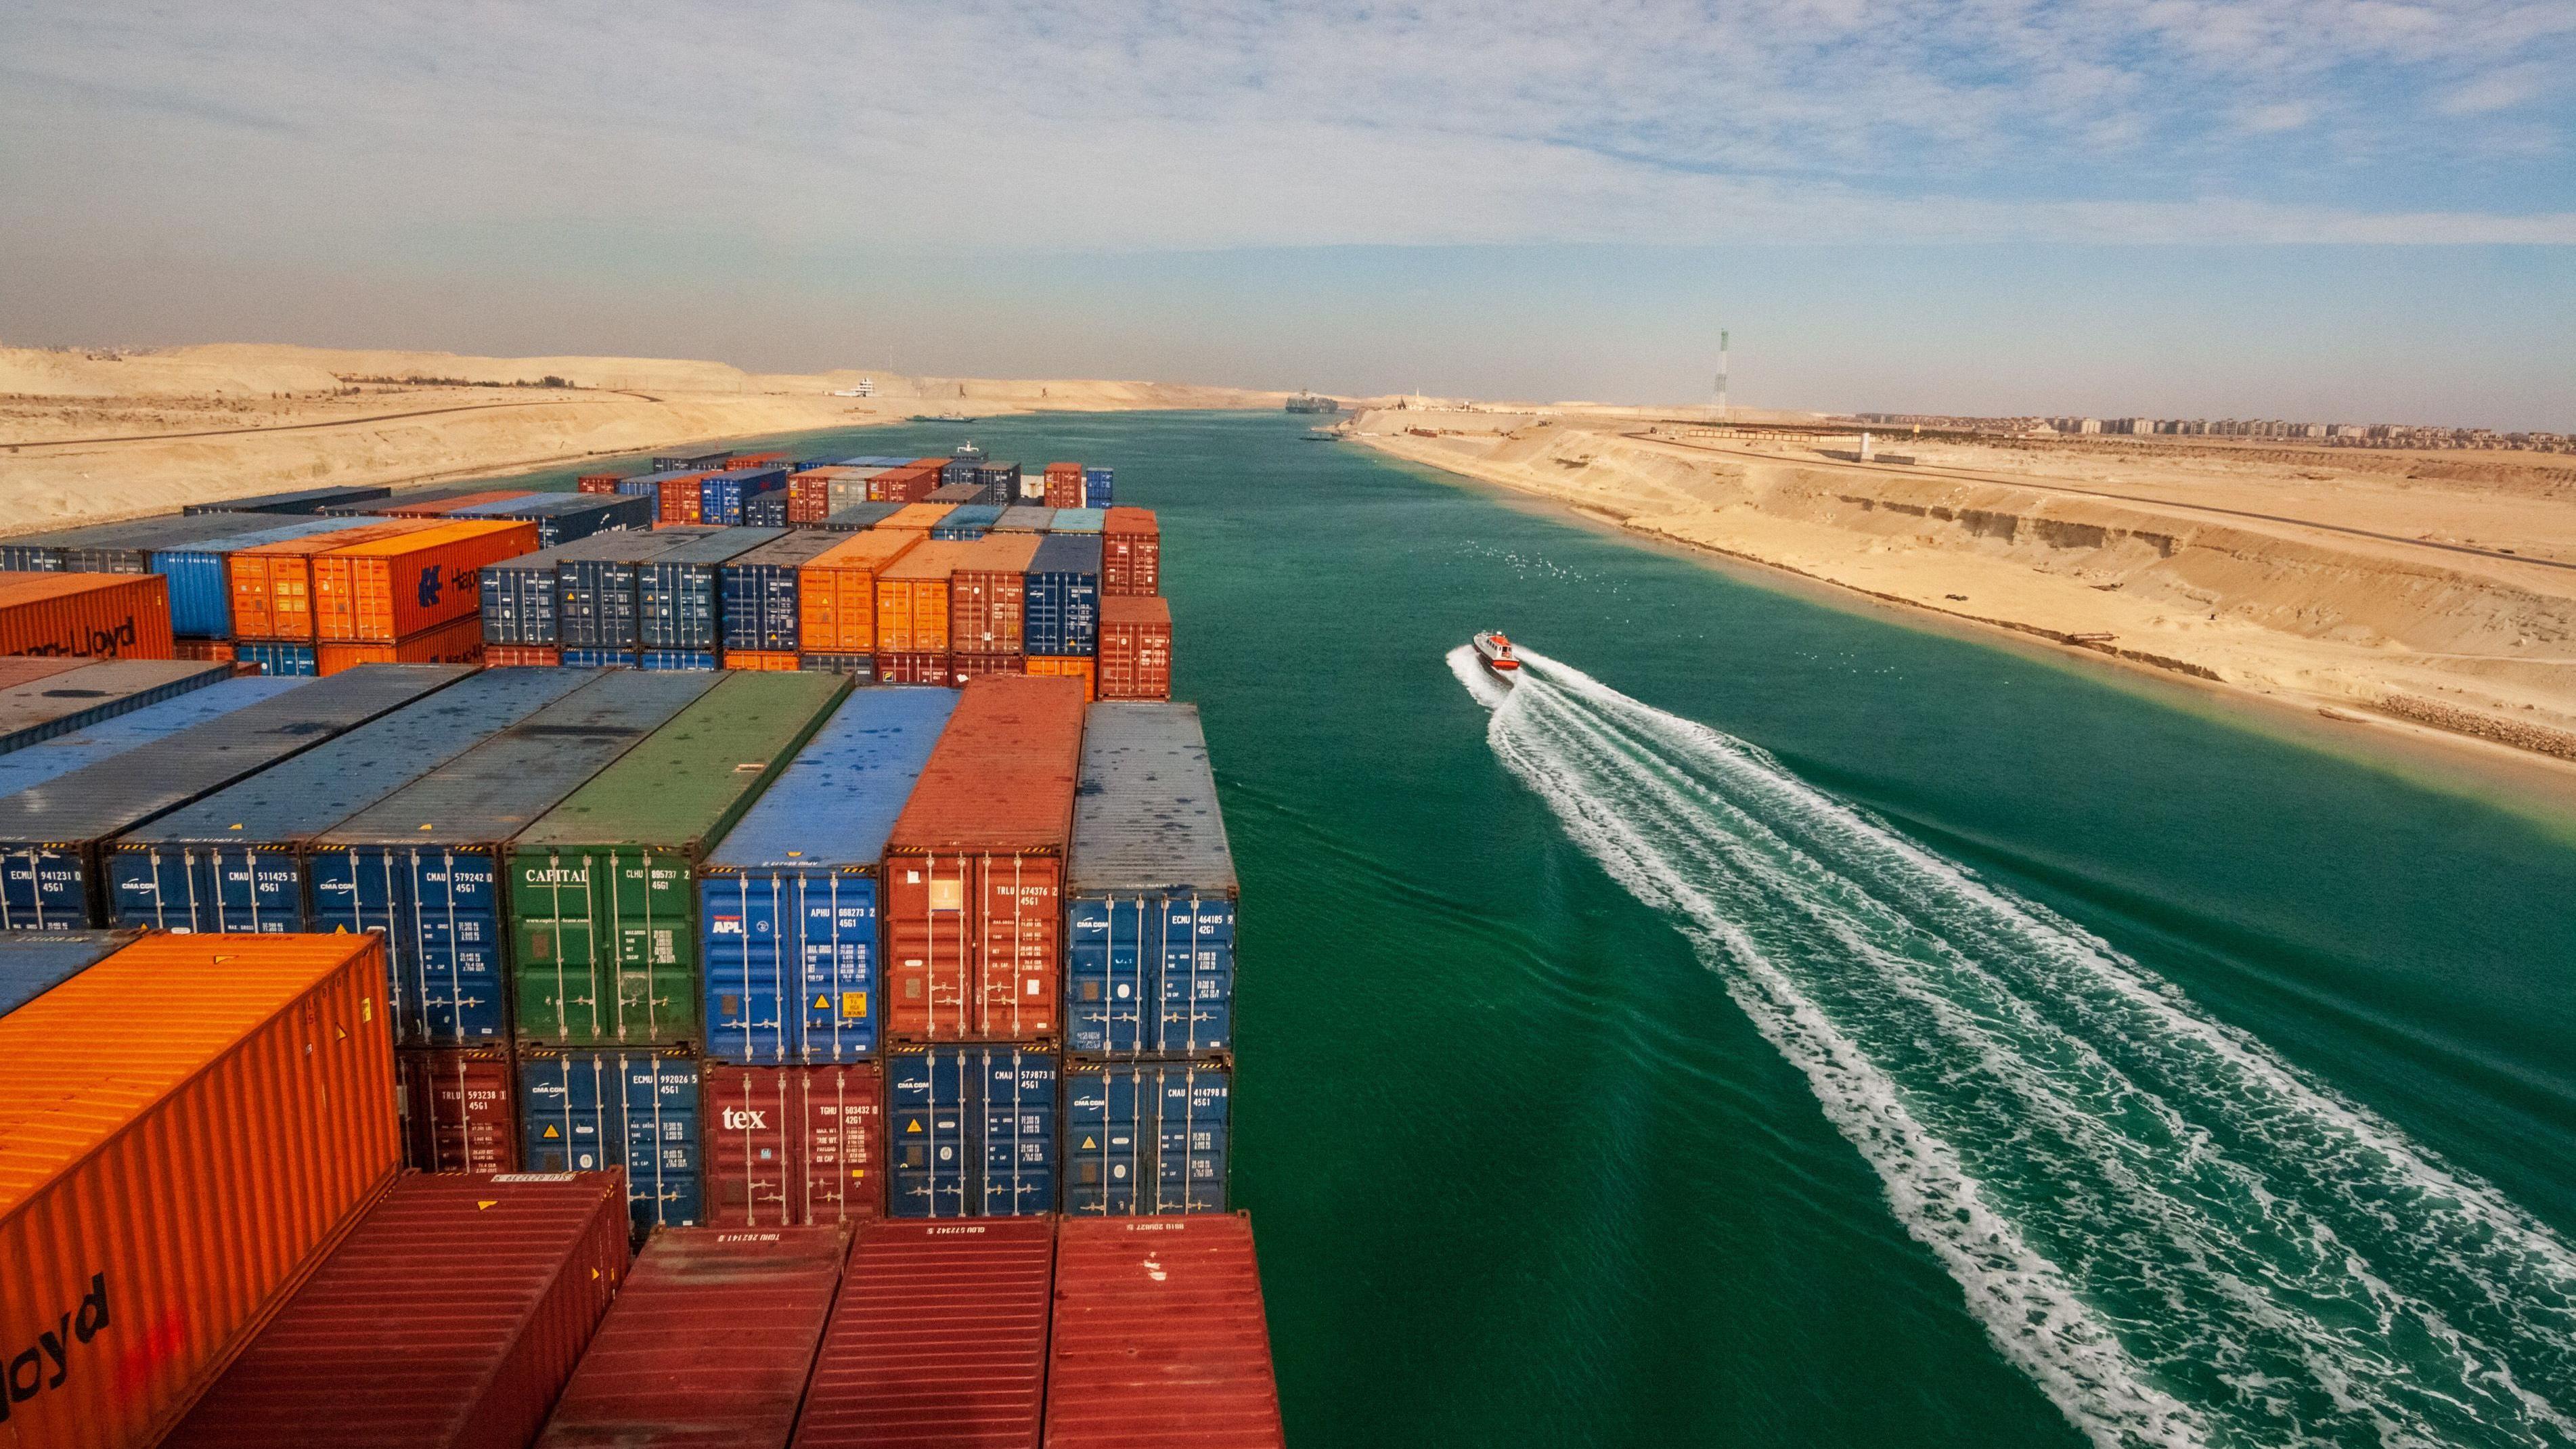 يجري شحن حوالي 12 في المئة من التجارة العالمية عبر قناة السويس.